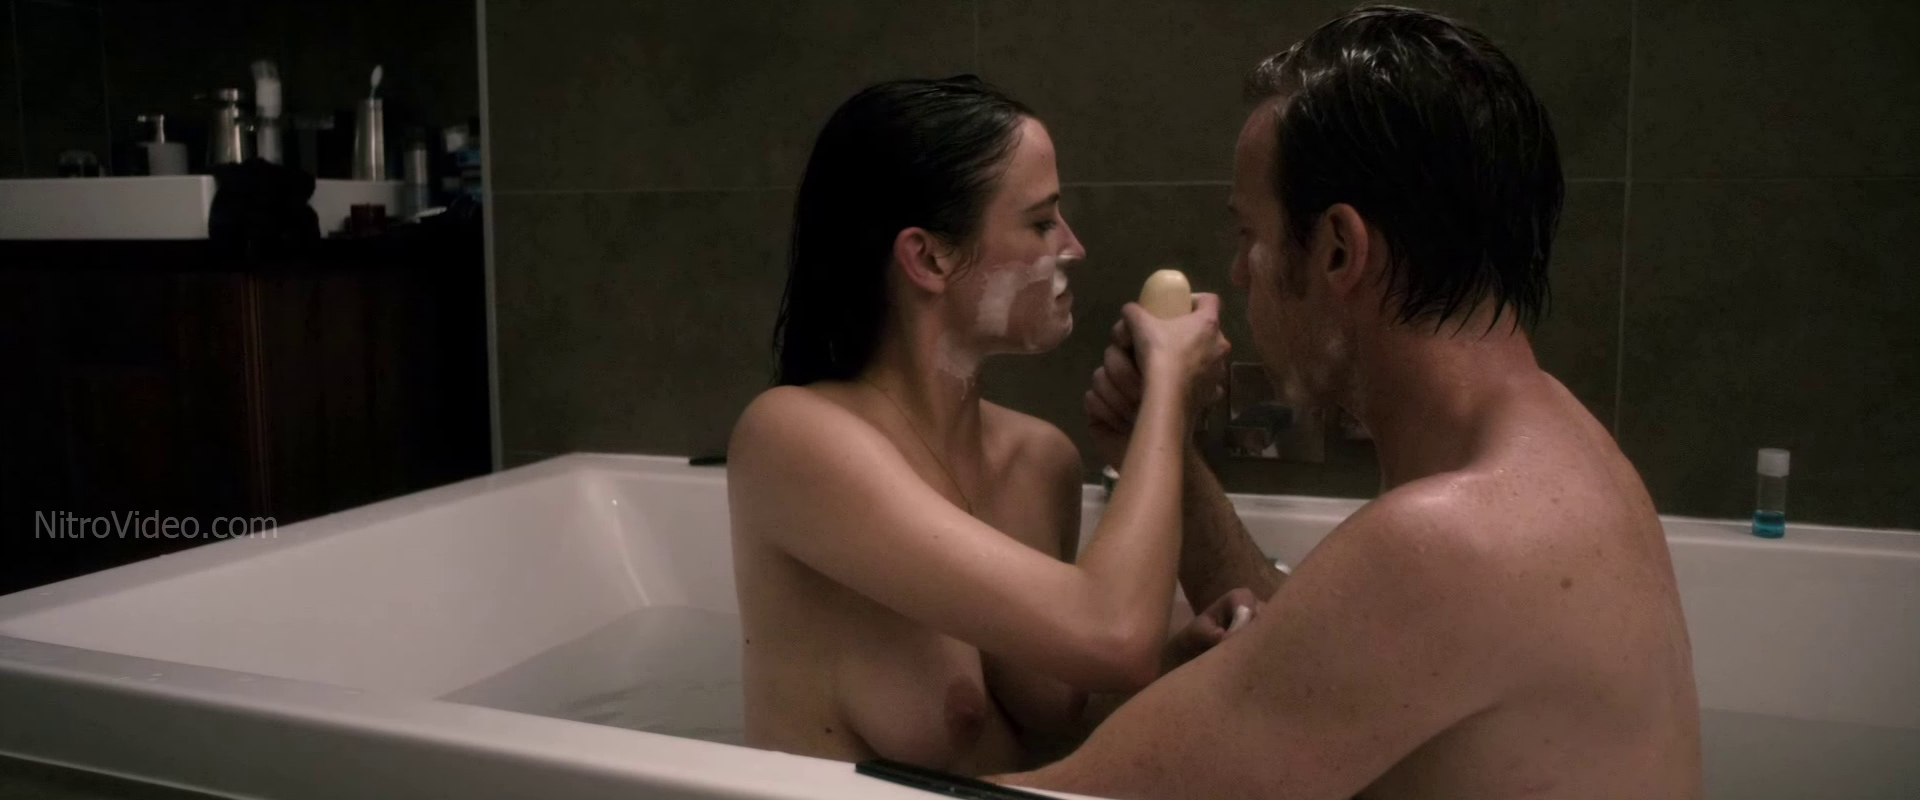 Ewan McGregor Penis Movie Scenes Full Frontal Nudity